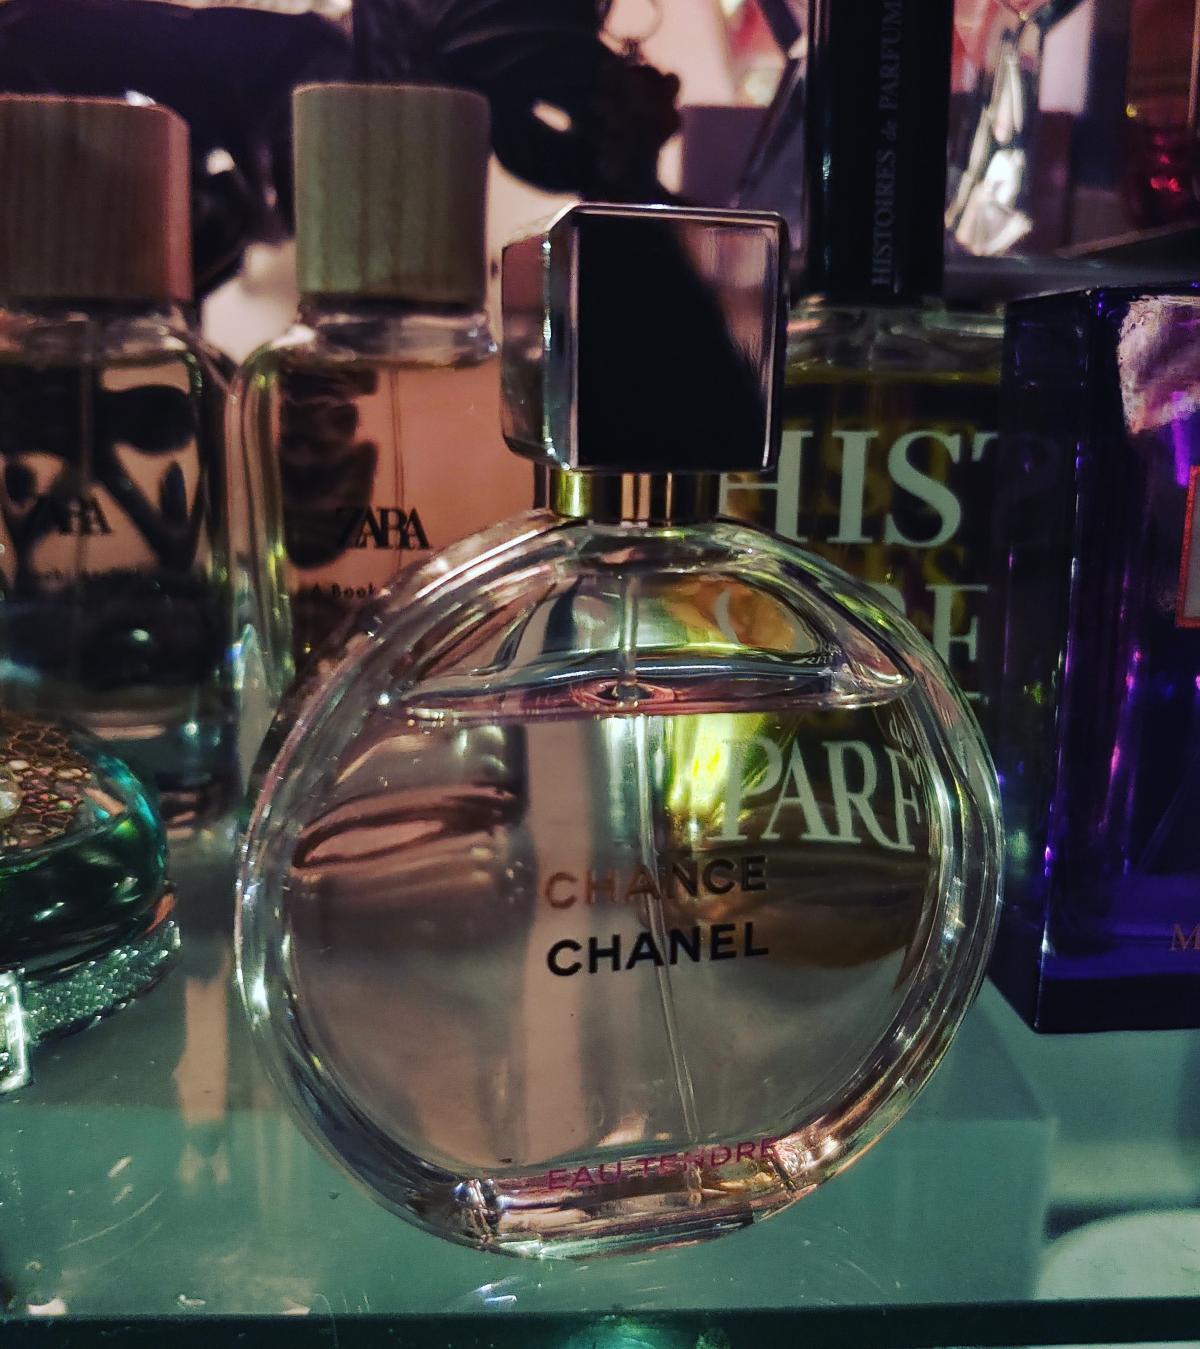 Chance Eau Tendre Chanel parfum - een geur voor dames 2010